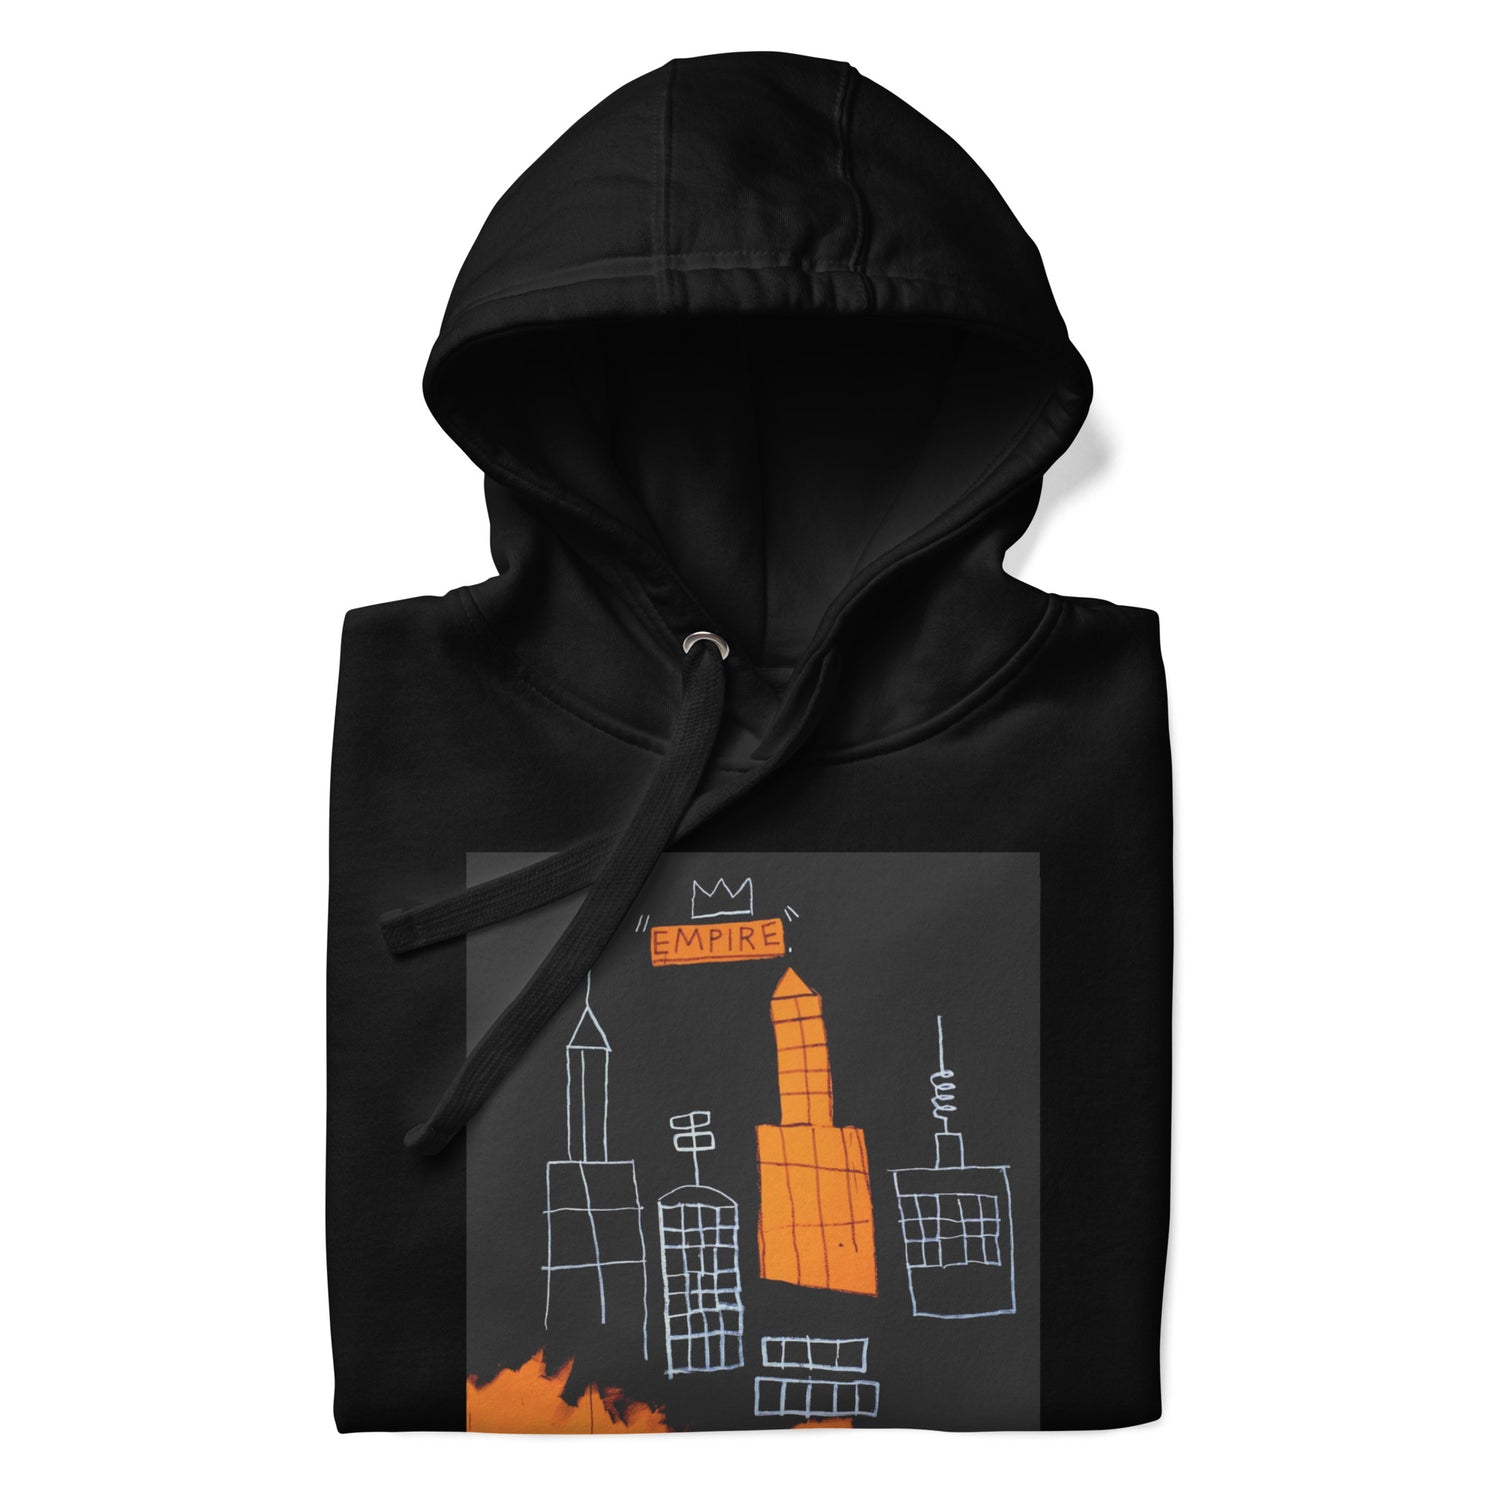 Jean-Michel Basquiat "Mecca" Artwork Printed Premium Streetwear Sweatshirt Hoodie Black